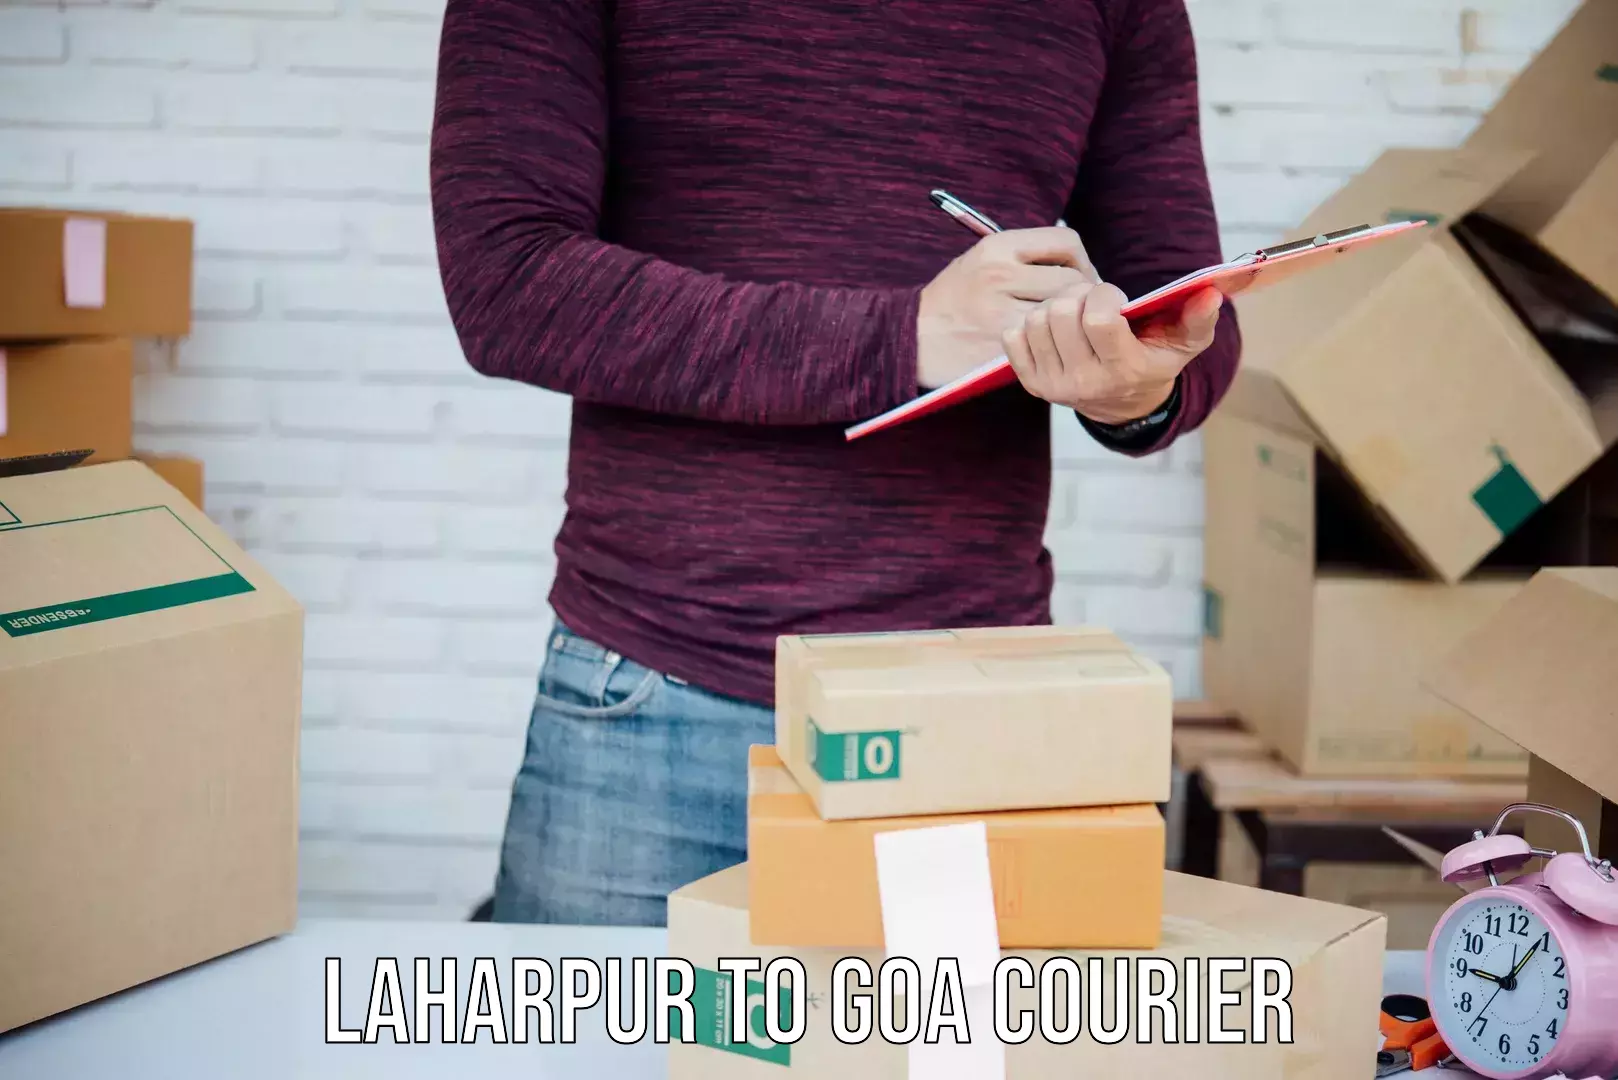 Flexible courier rates Laharpur to Goa